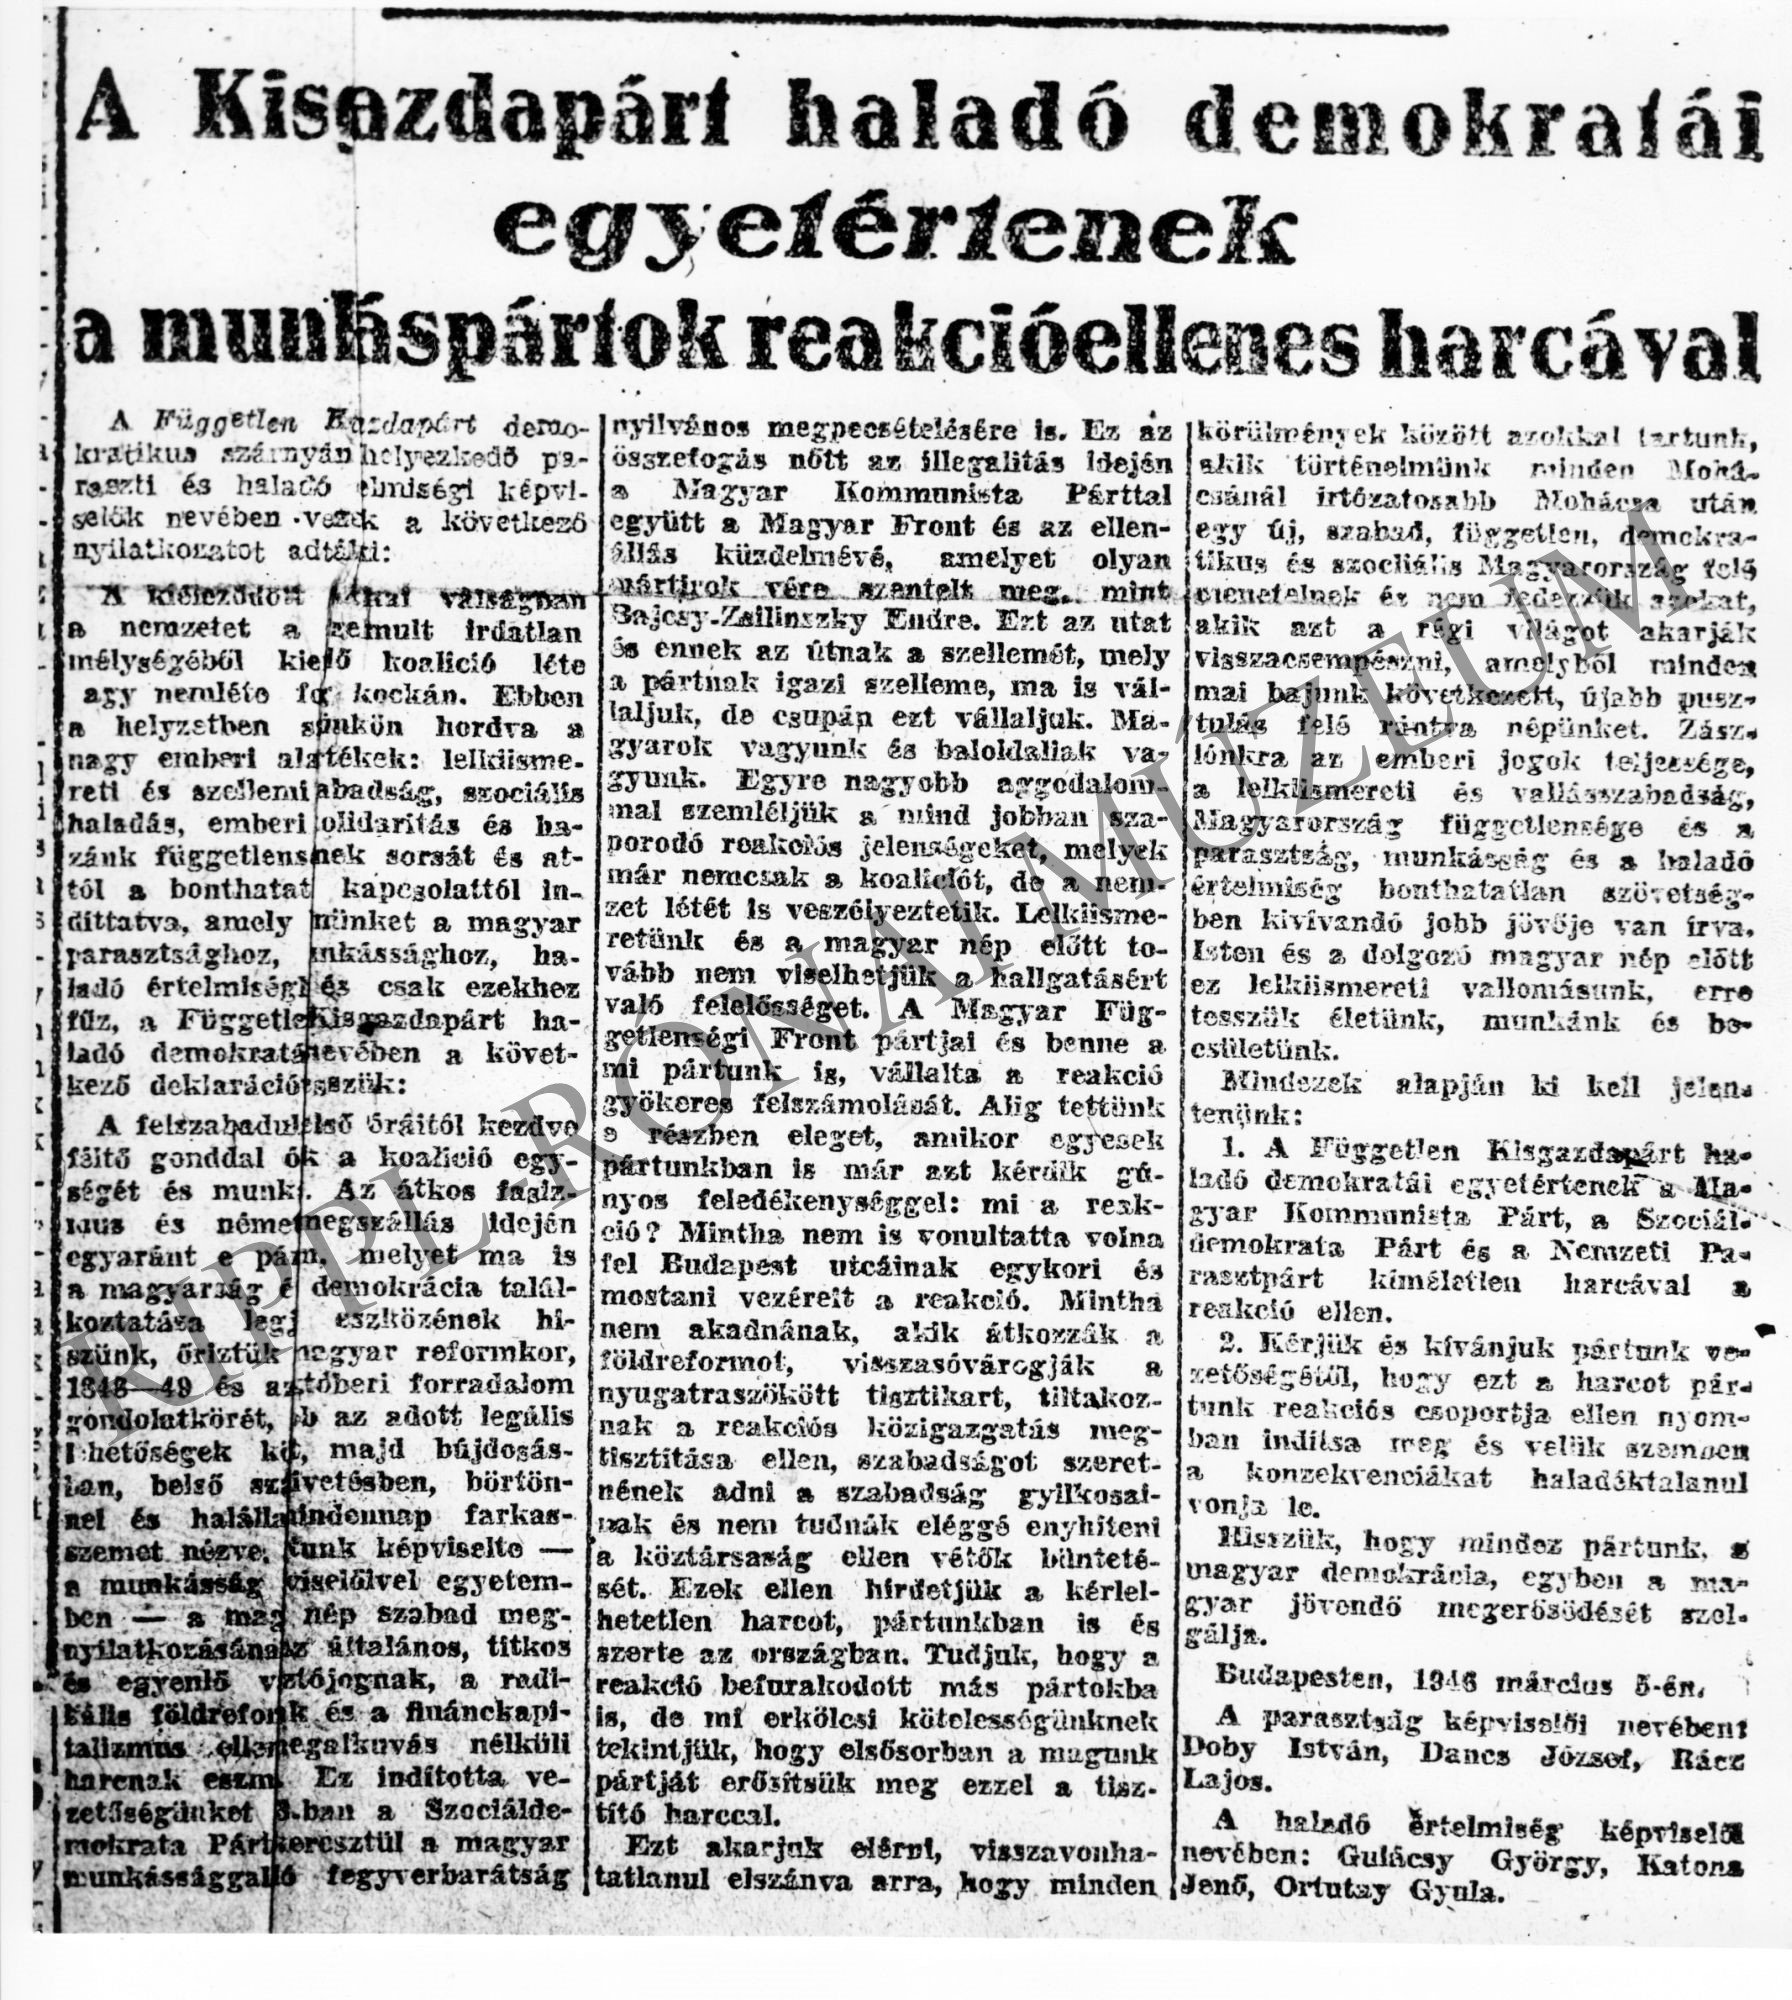 A Szabad Nép cikke a kisgazdapárti baloldalról. 1947. (Rippl-Rónai Múzeum CC BY-NC-SA)